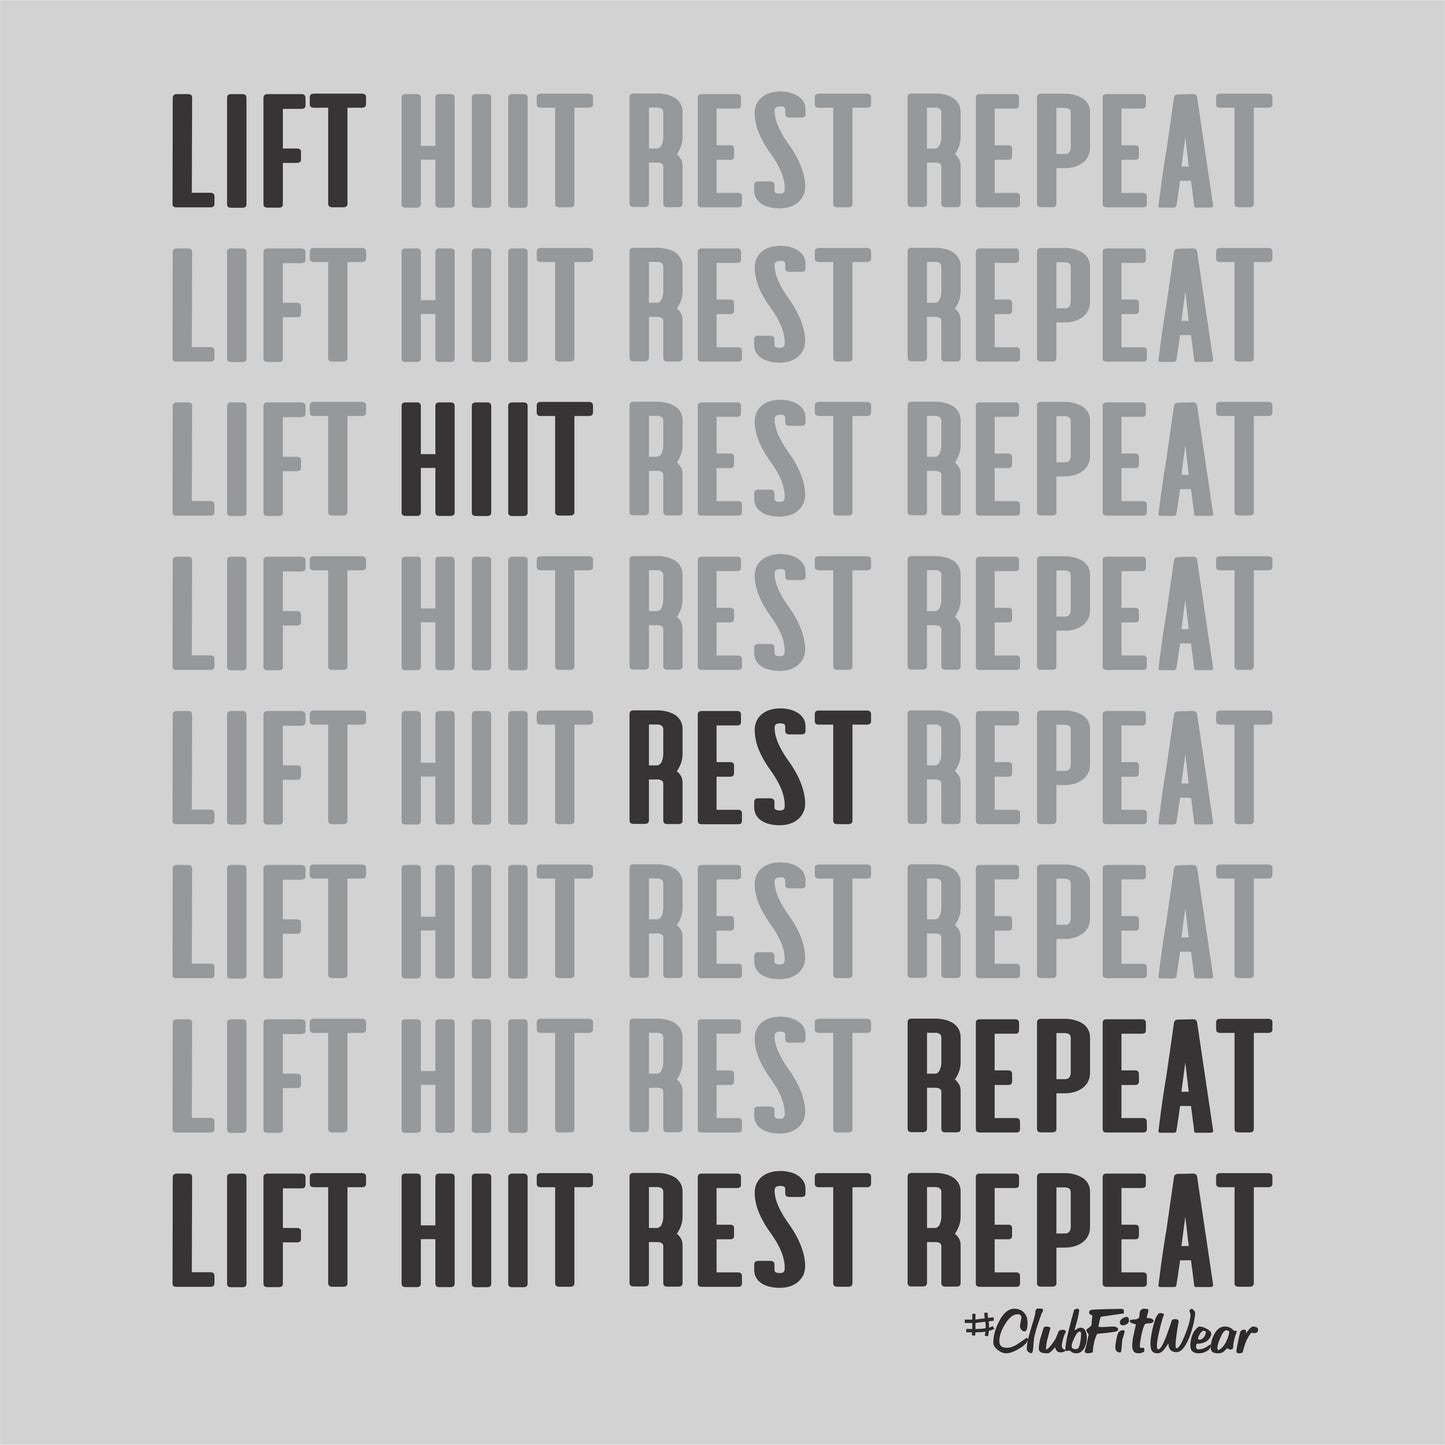 Lift Hiit Rest Repeat - Repeat